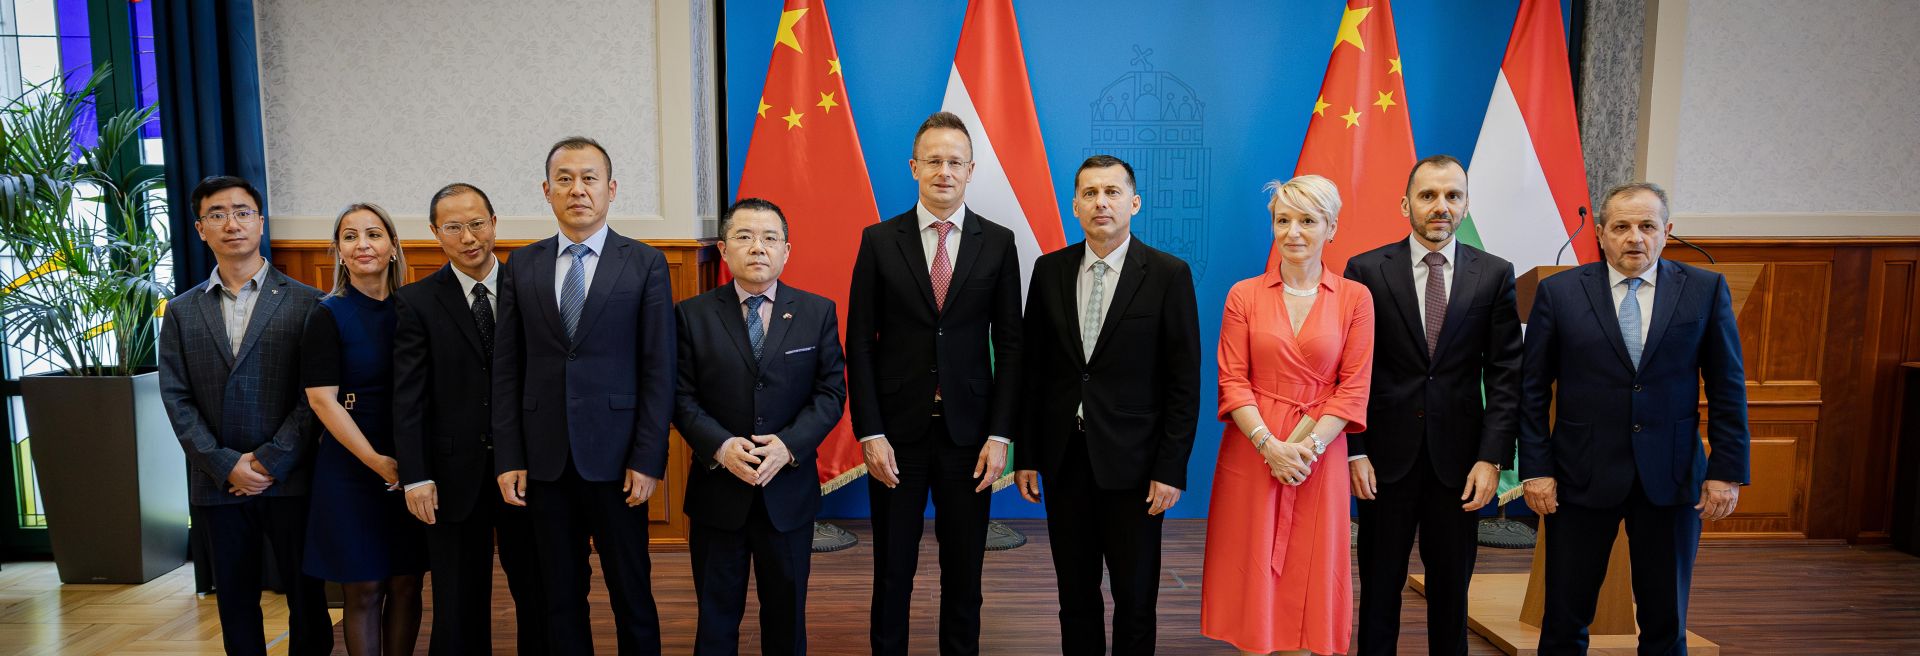 Kisbéren hozza létre legnagyobb európai operációját a vezető kínai infokommunikációs vállalat